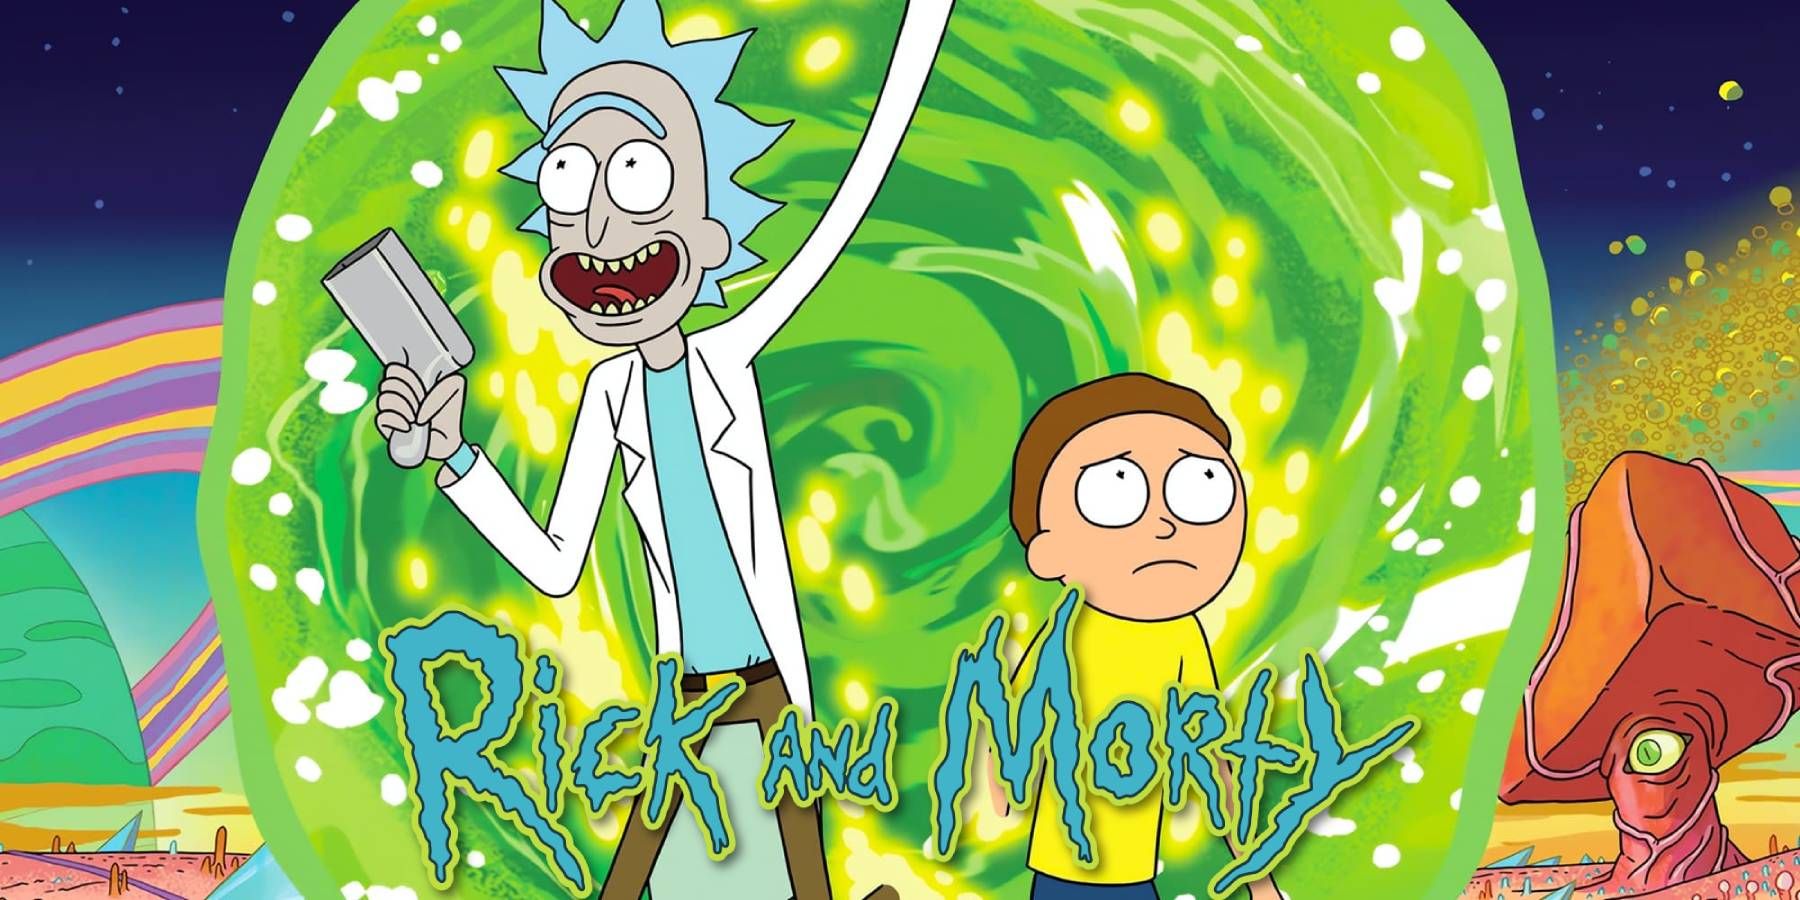 Affiche Rick et Morty